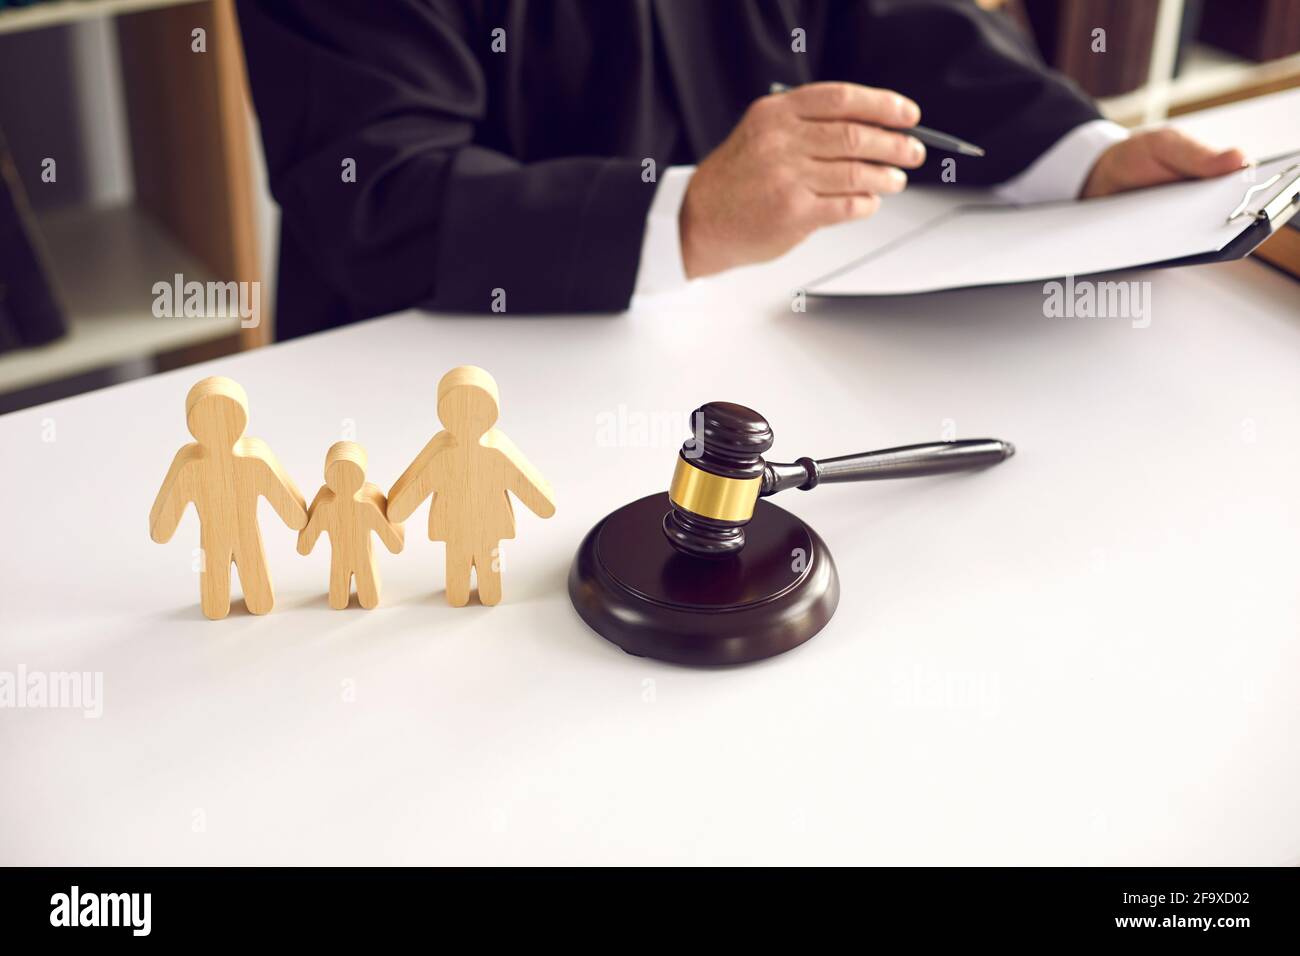 Figurines de famille en bois et gavage sur fond de juge qui signe une sentence. Banque D'Images